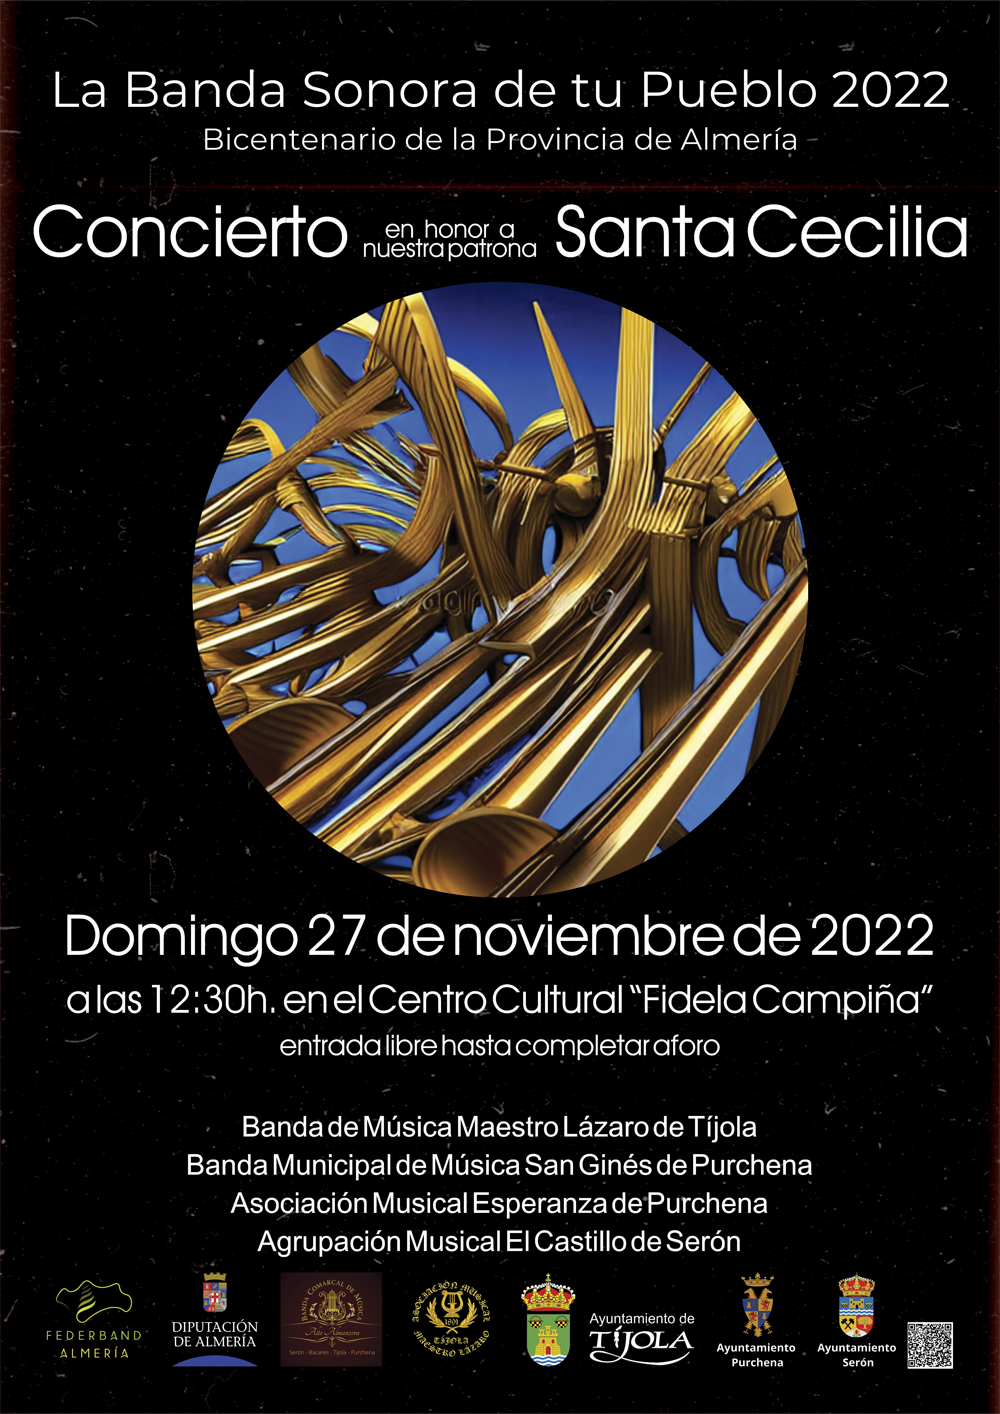 Imagen del Cartel del Concierto en honor a Santa Cecilia 2022. Con imagen abstracta de La Banda Sonora de tu Pueblo al fondo.